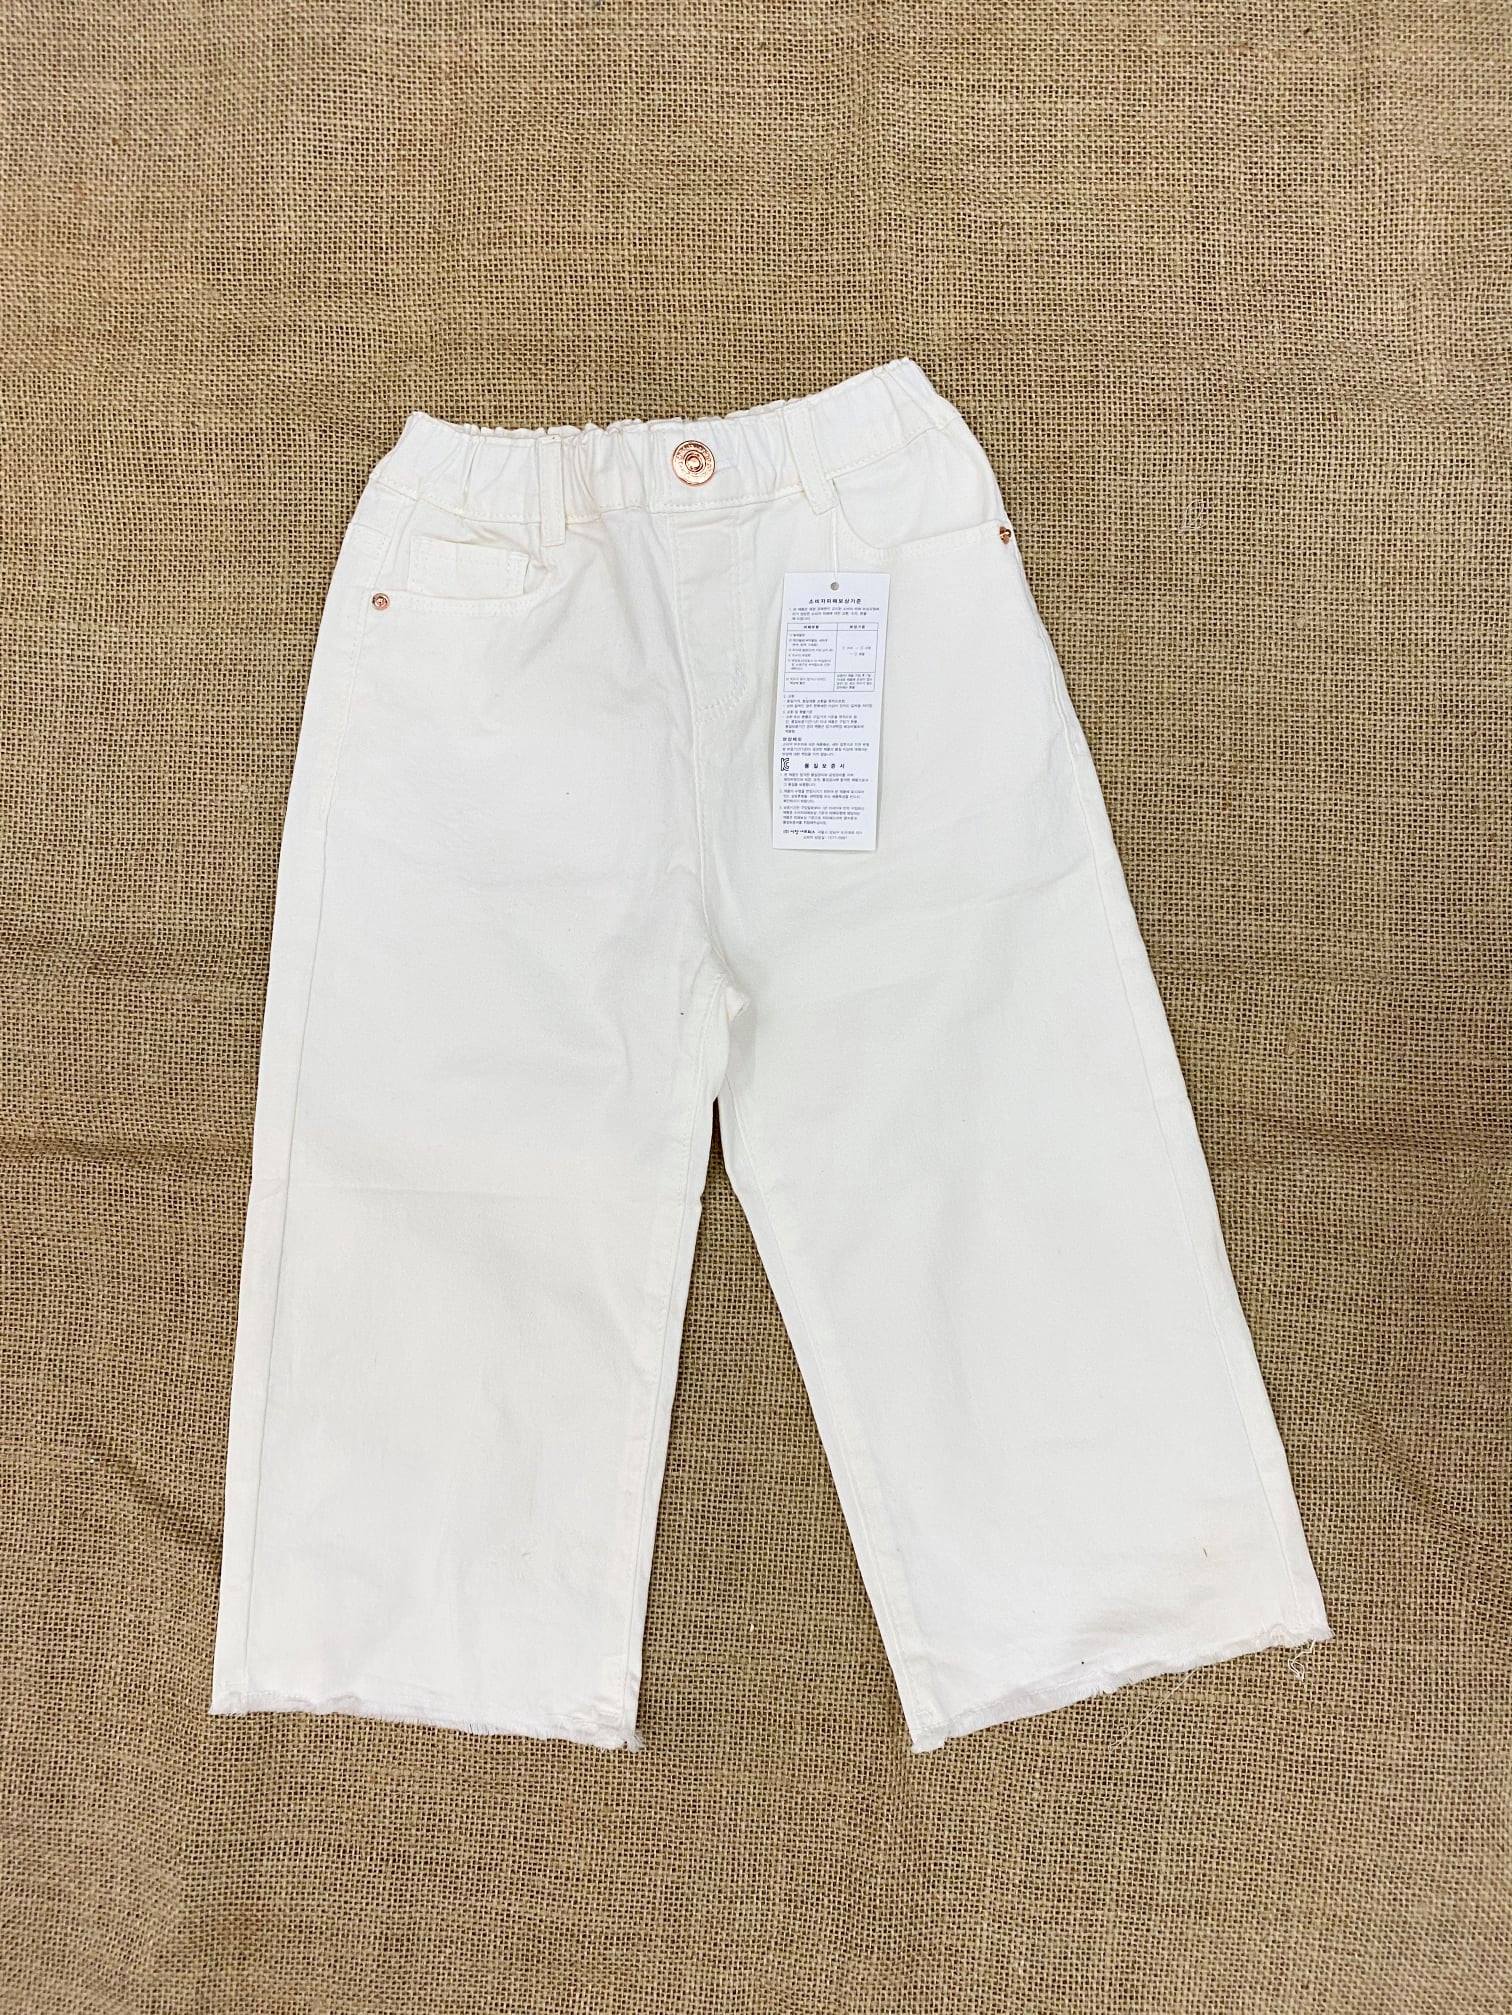 Quần jean trắng tinh lửng bé gái, xuất Hàn Quốc, made in vietnam, size từ 100 đến 150,